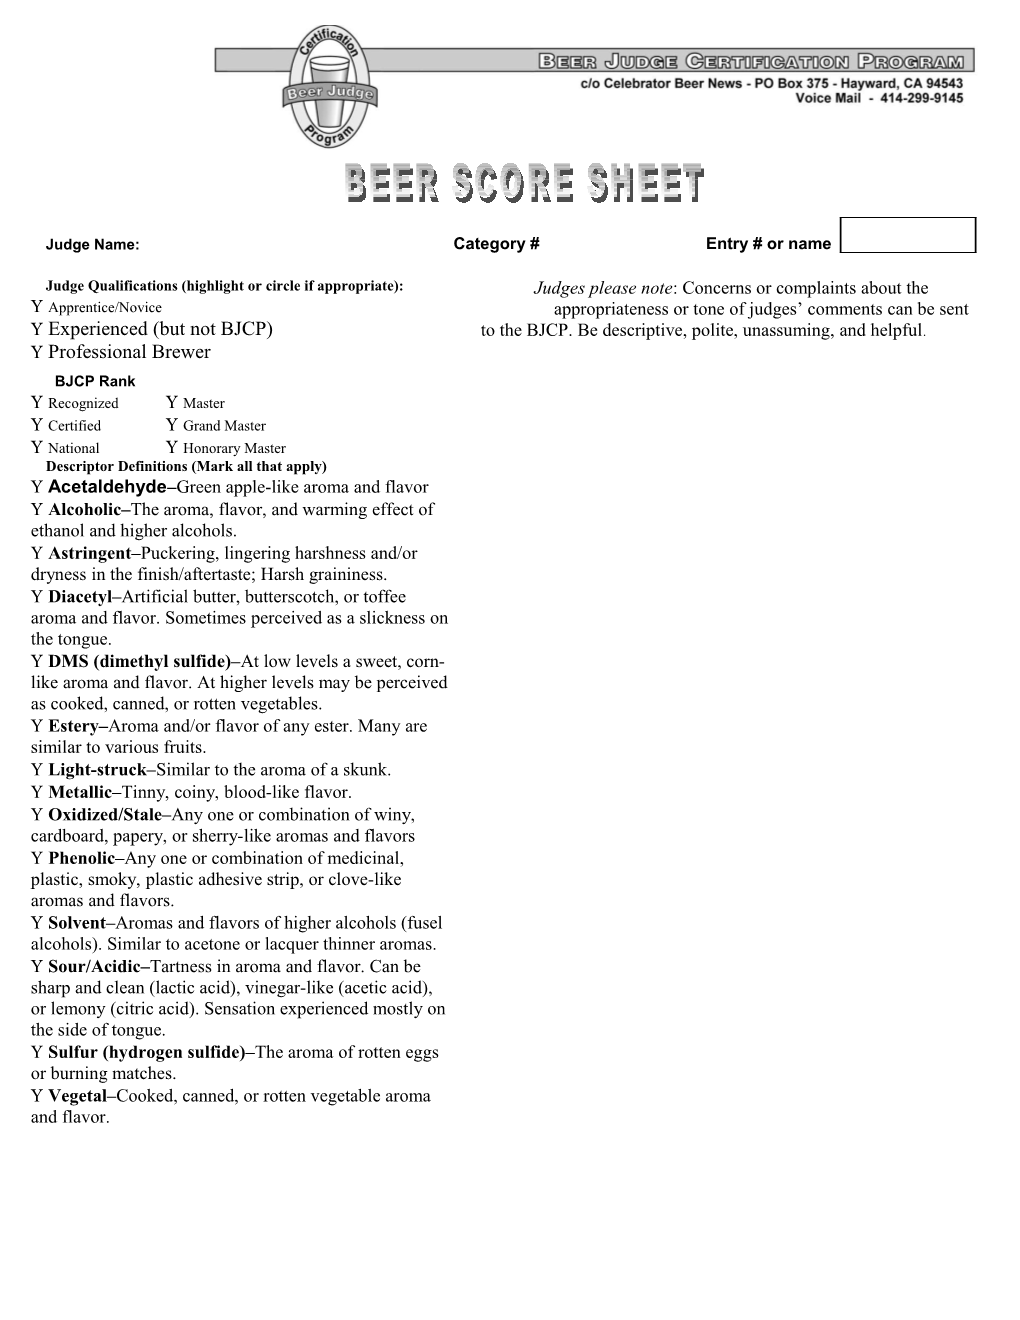 Editable Score Sheet